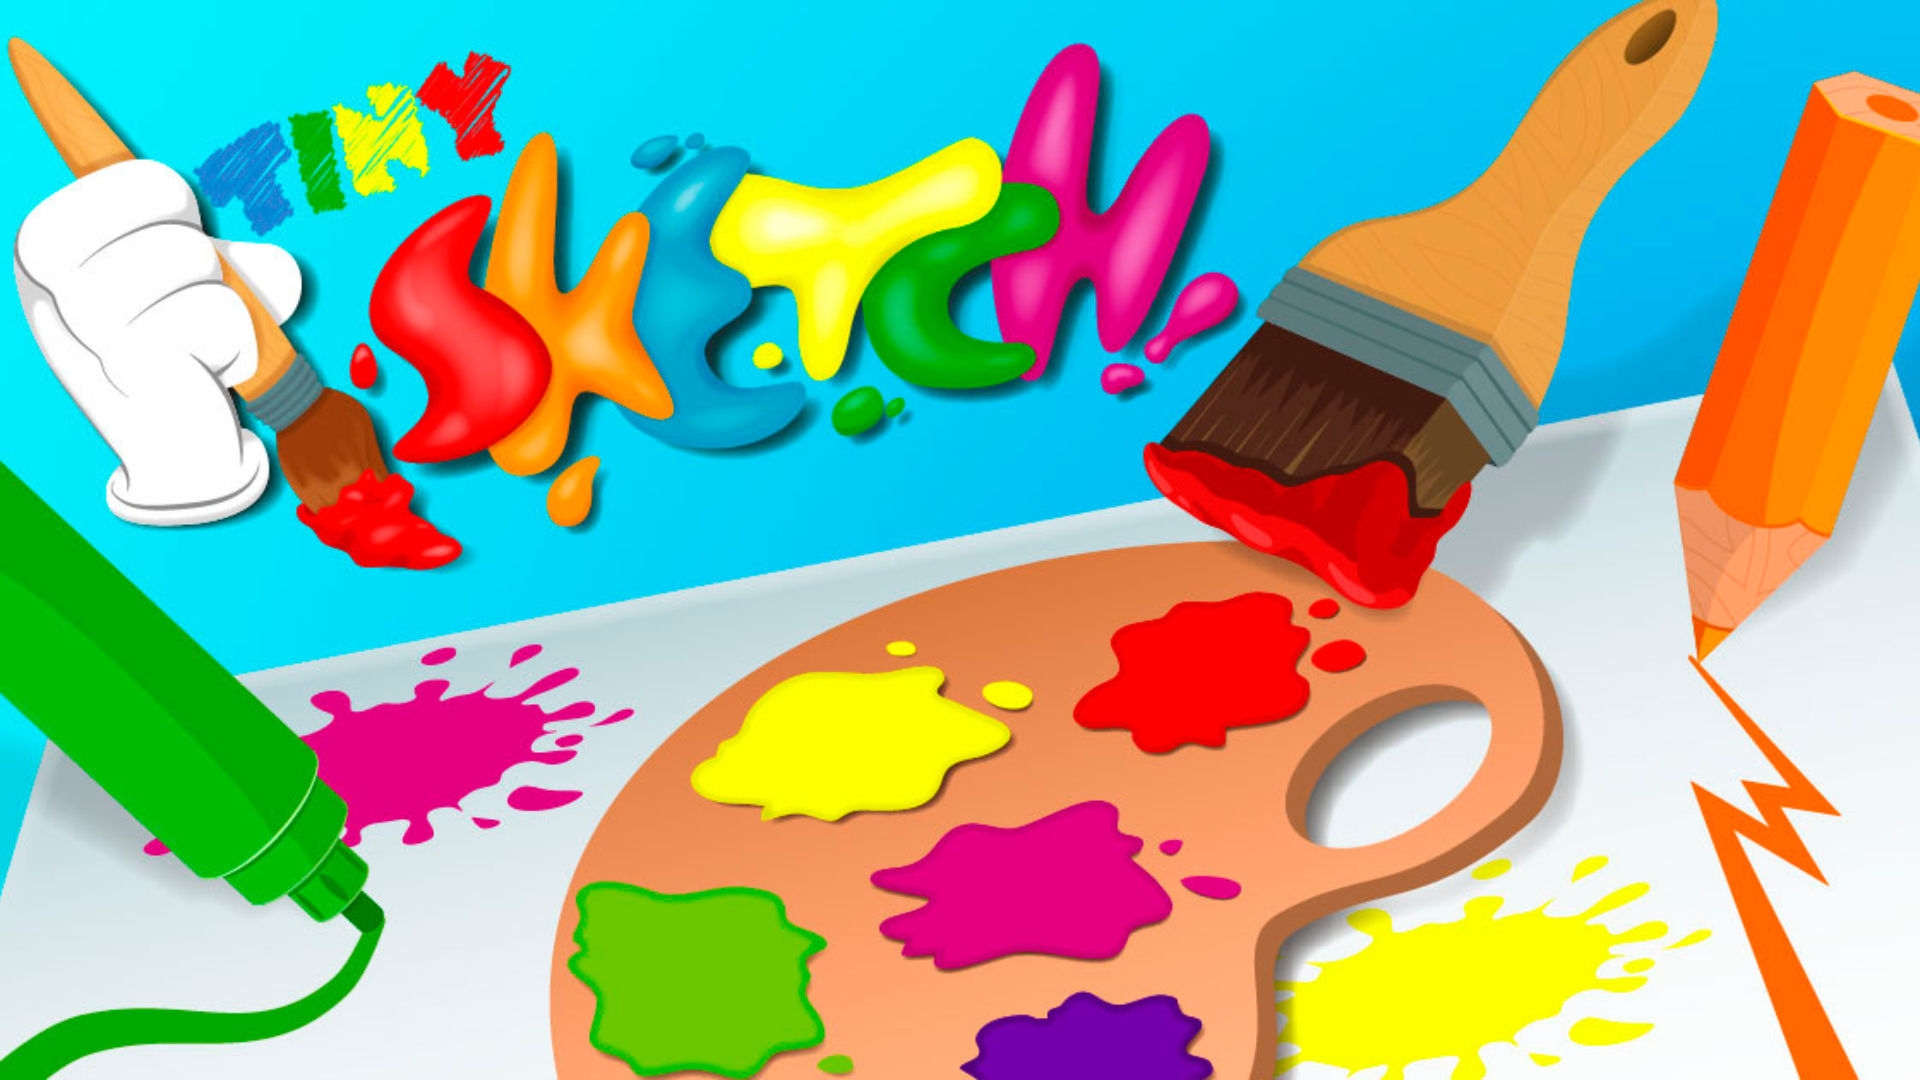 Игра рисования есть. Рисуем красками с детьми. Игра краски. Игры рисовалки. Игра краски для детей.